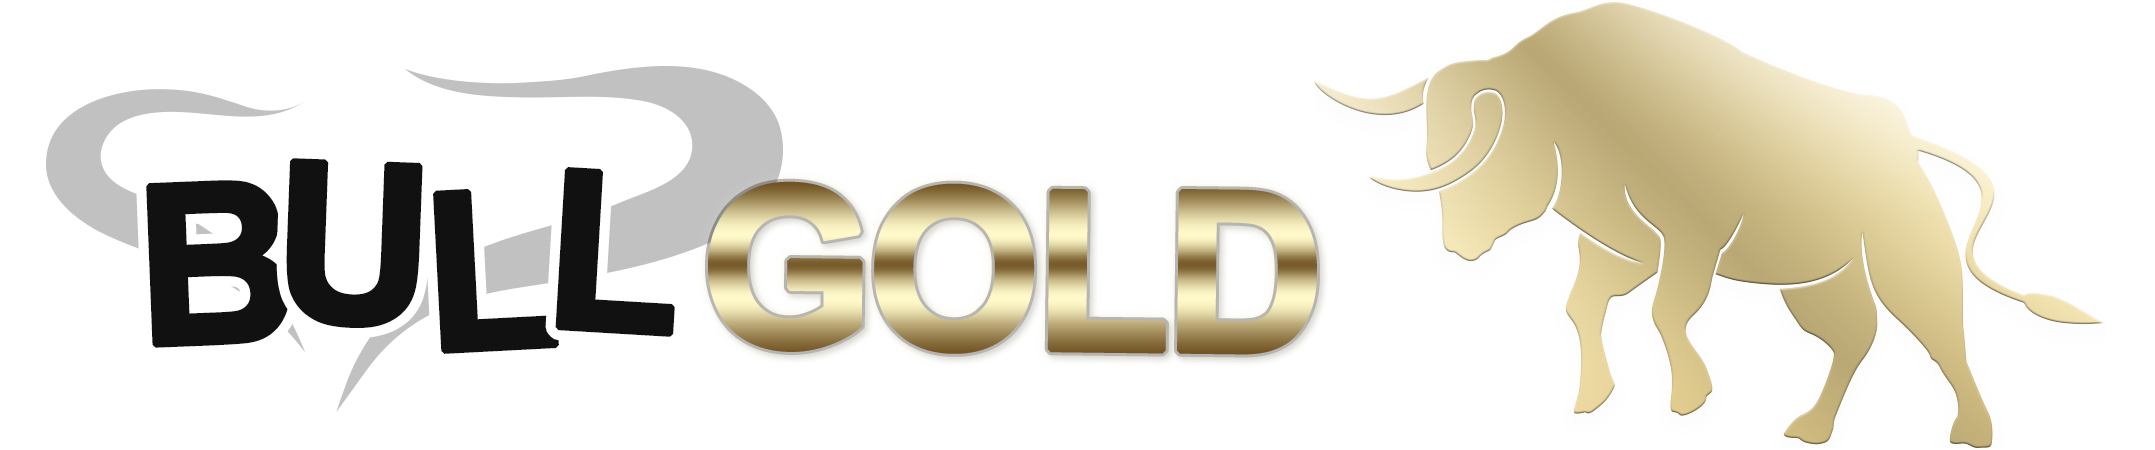 BULL GOLD logo